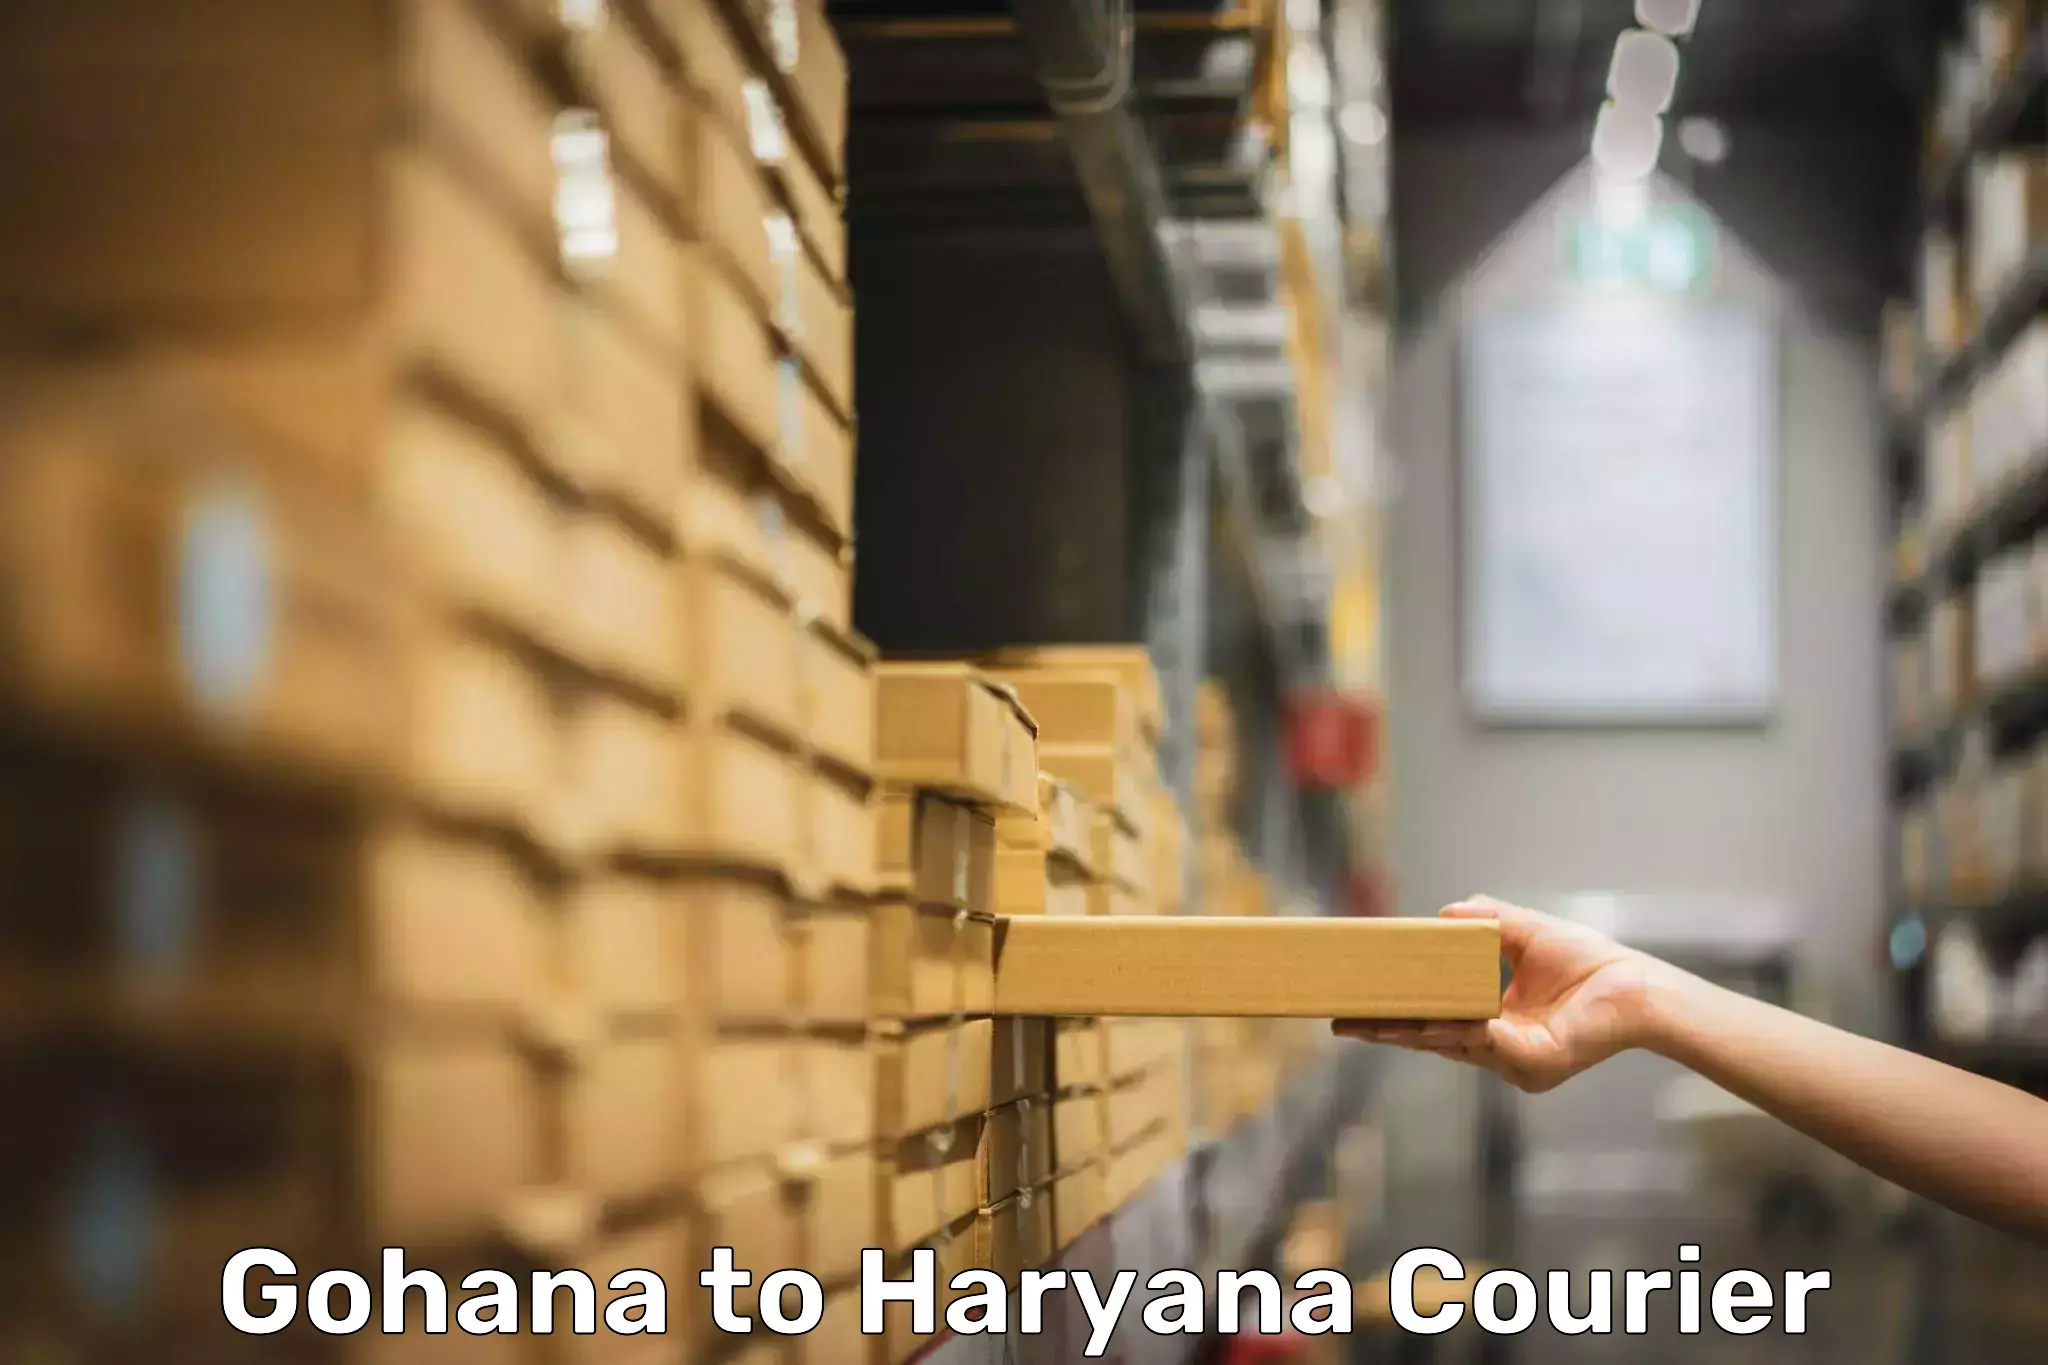 Baggage shipping experts Gohana to NCR Haryana